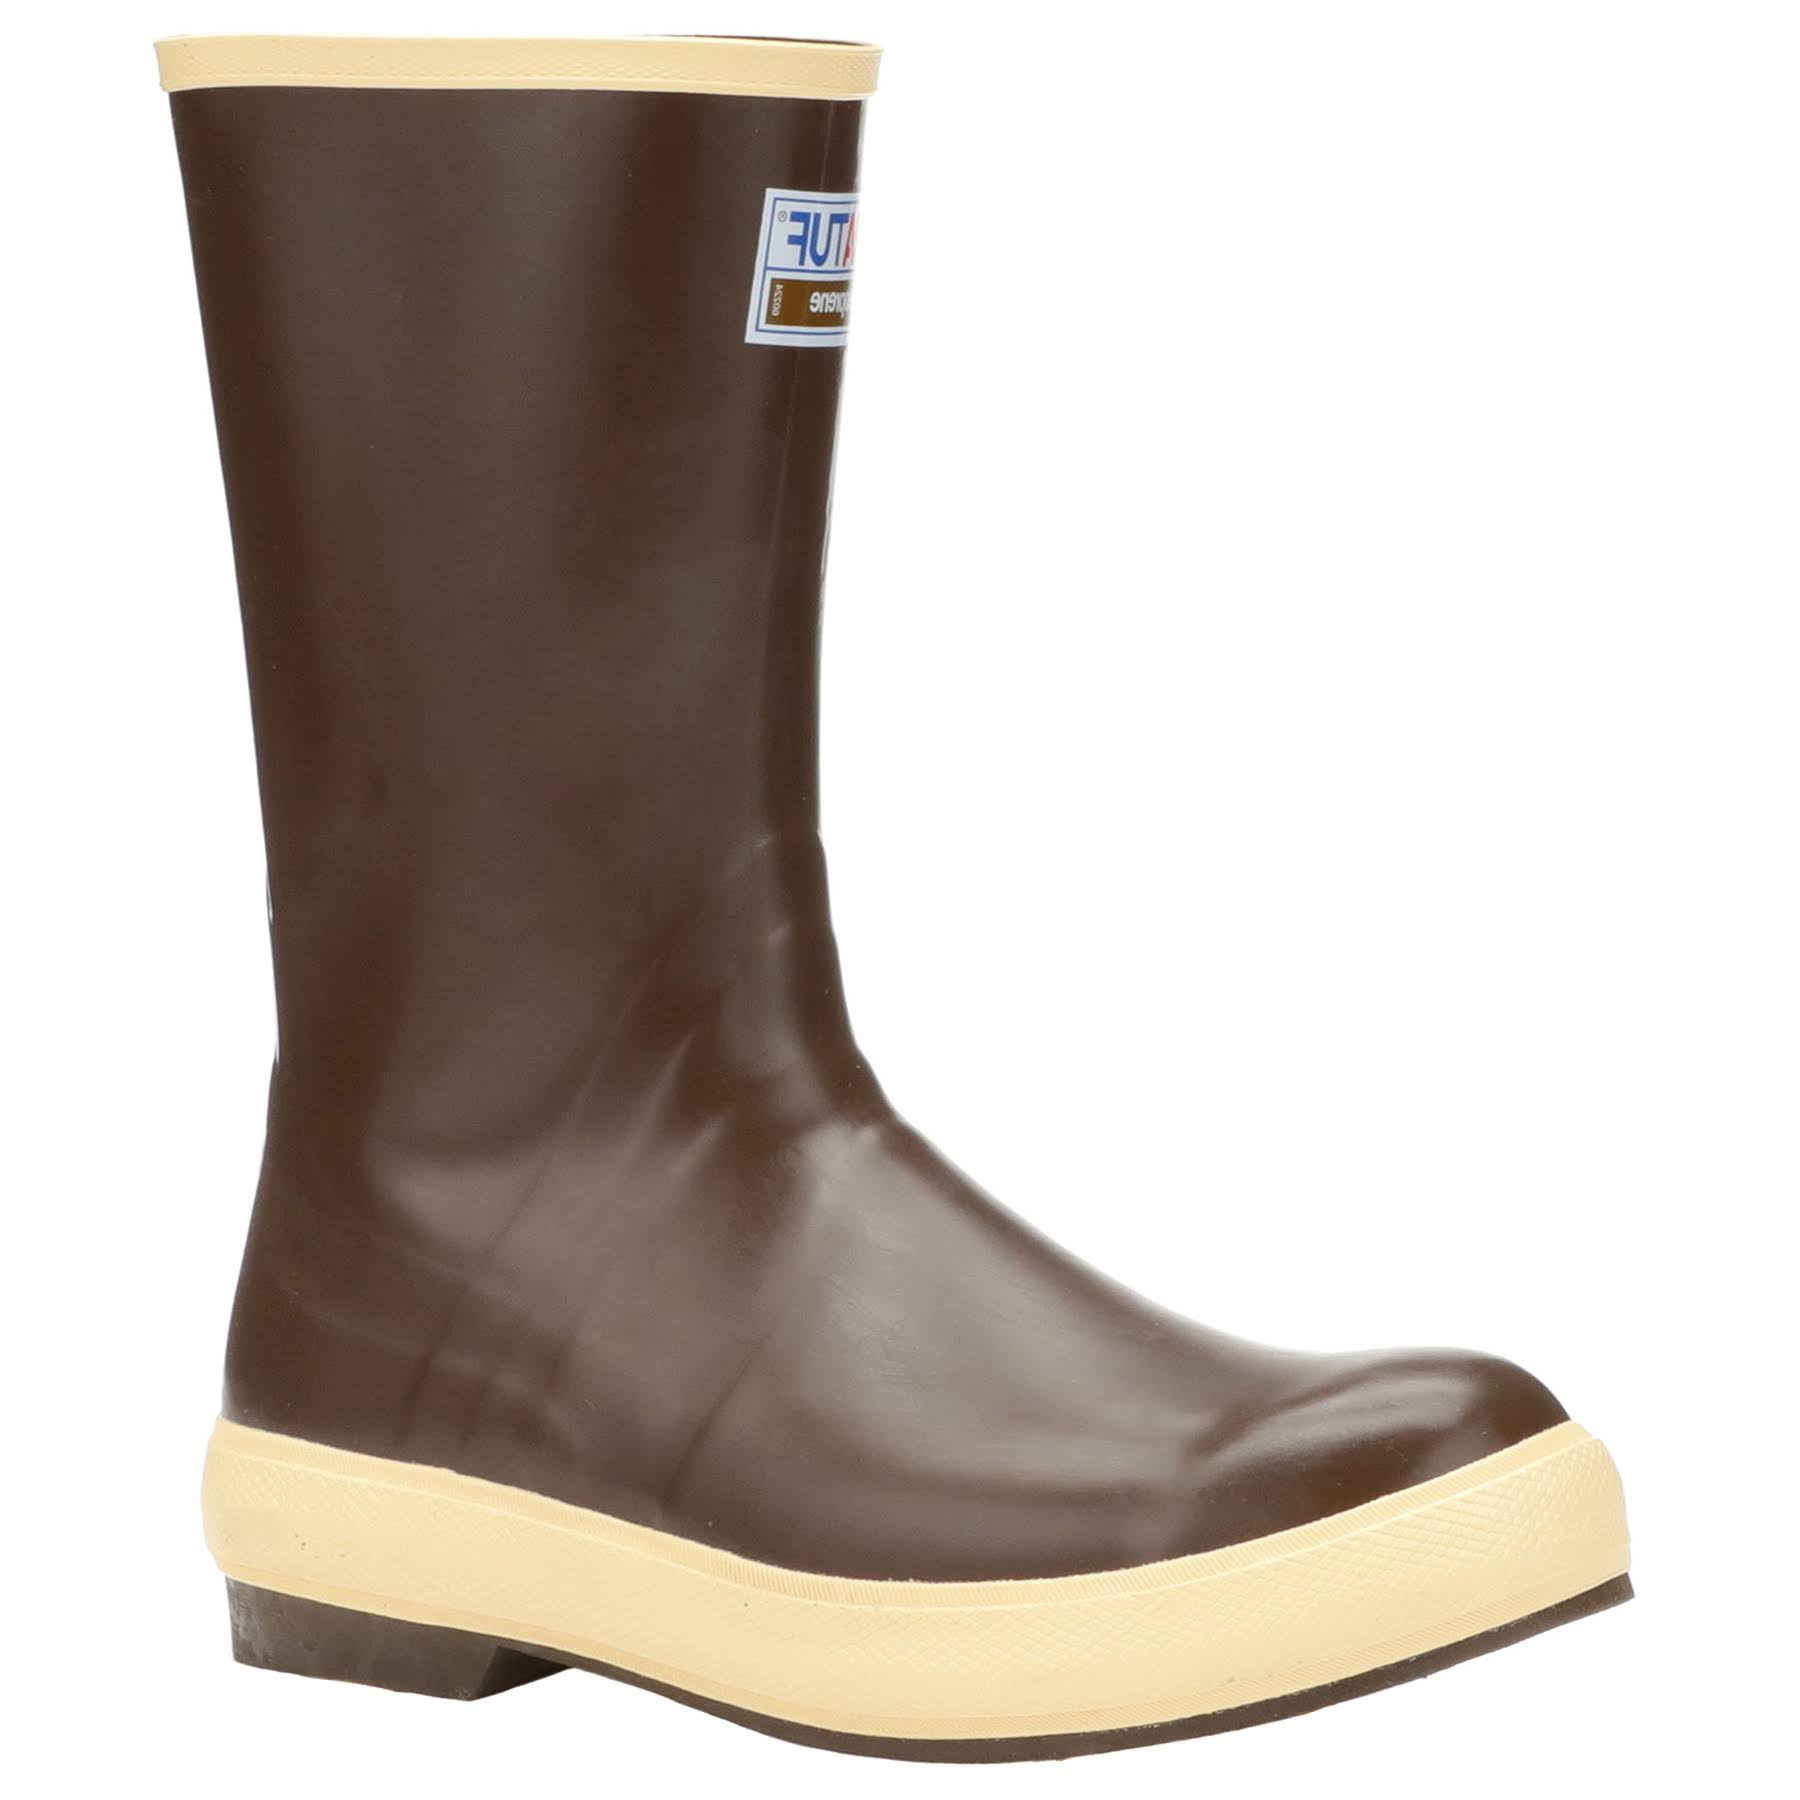 Xtratuf Legacy Neoprene Boots - Copper Tan, 7 US, 12"